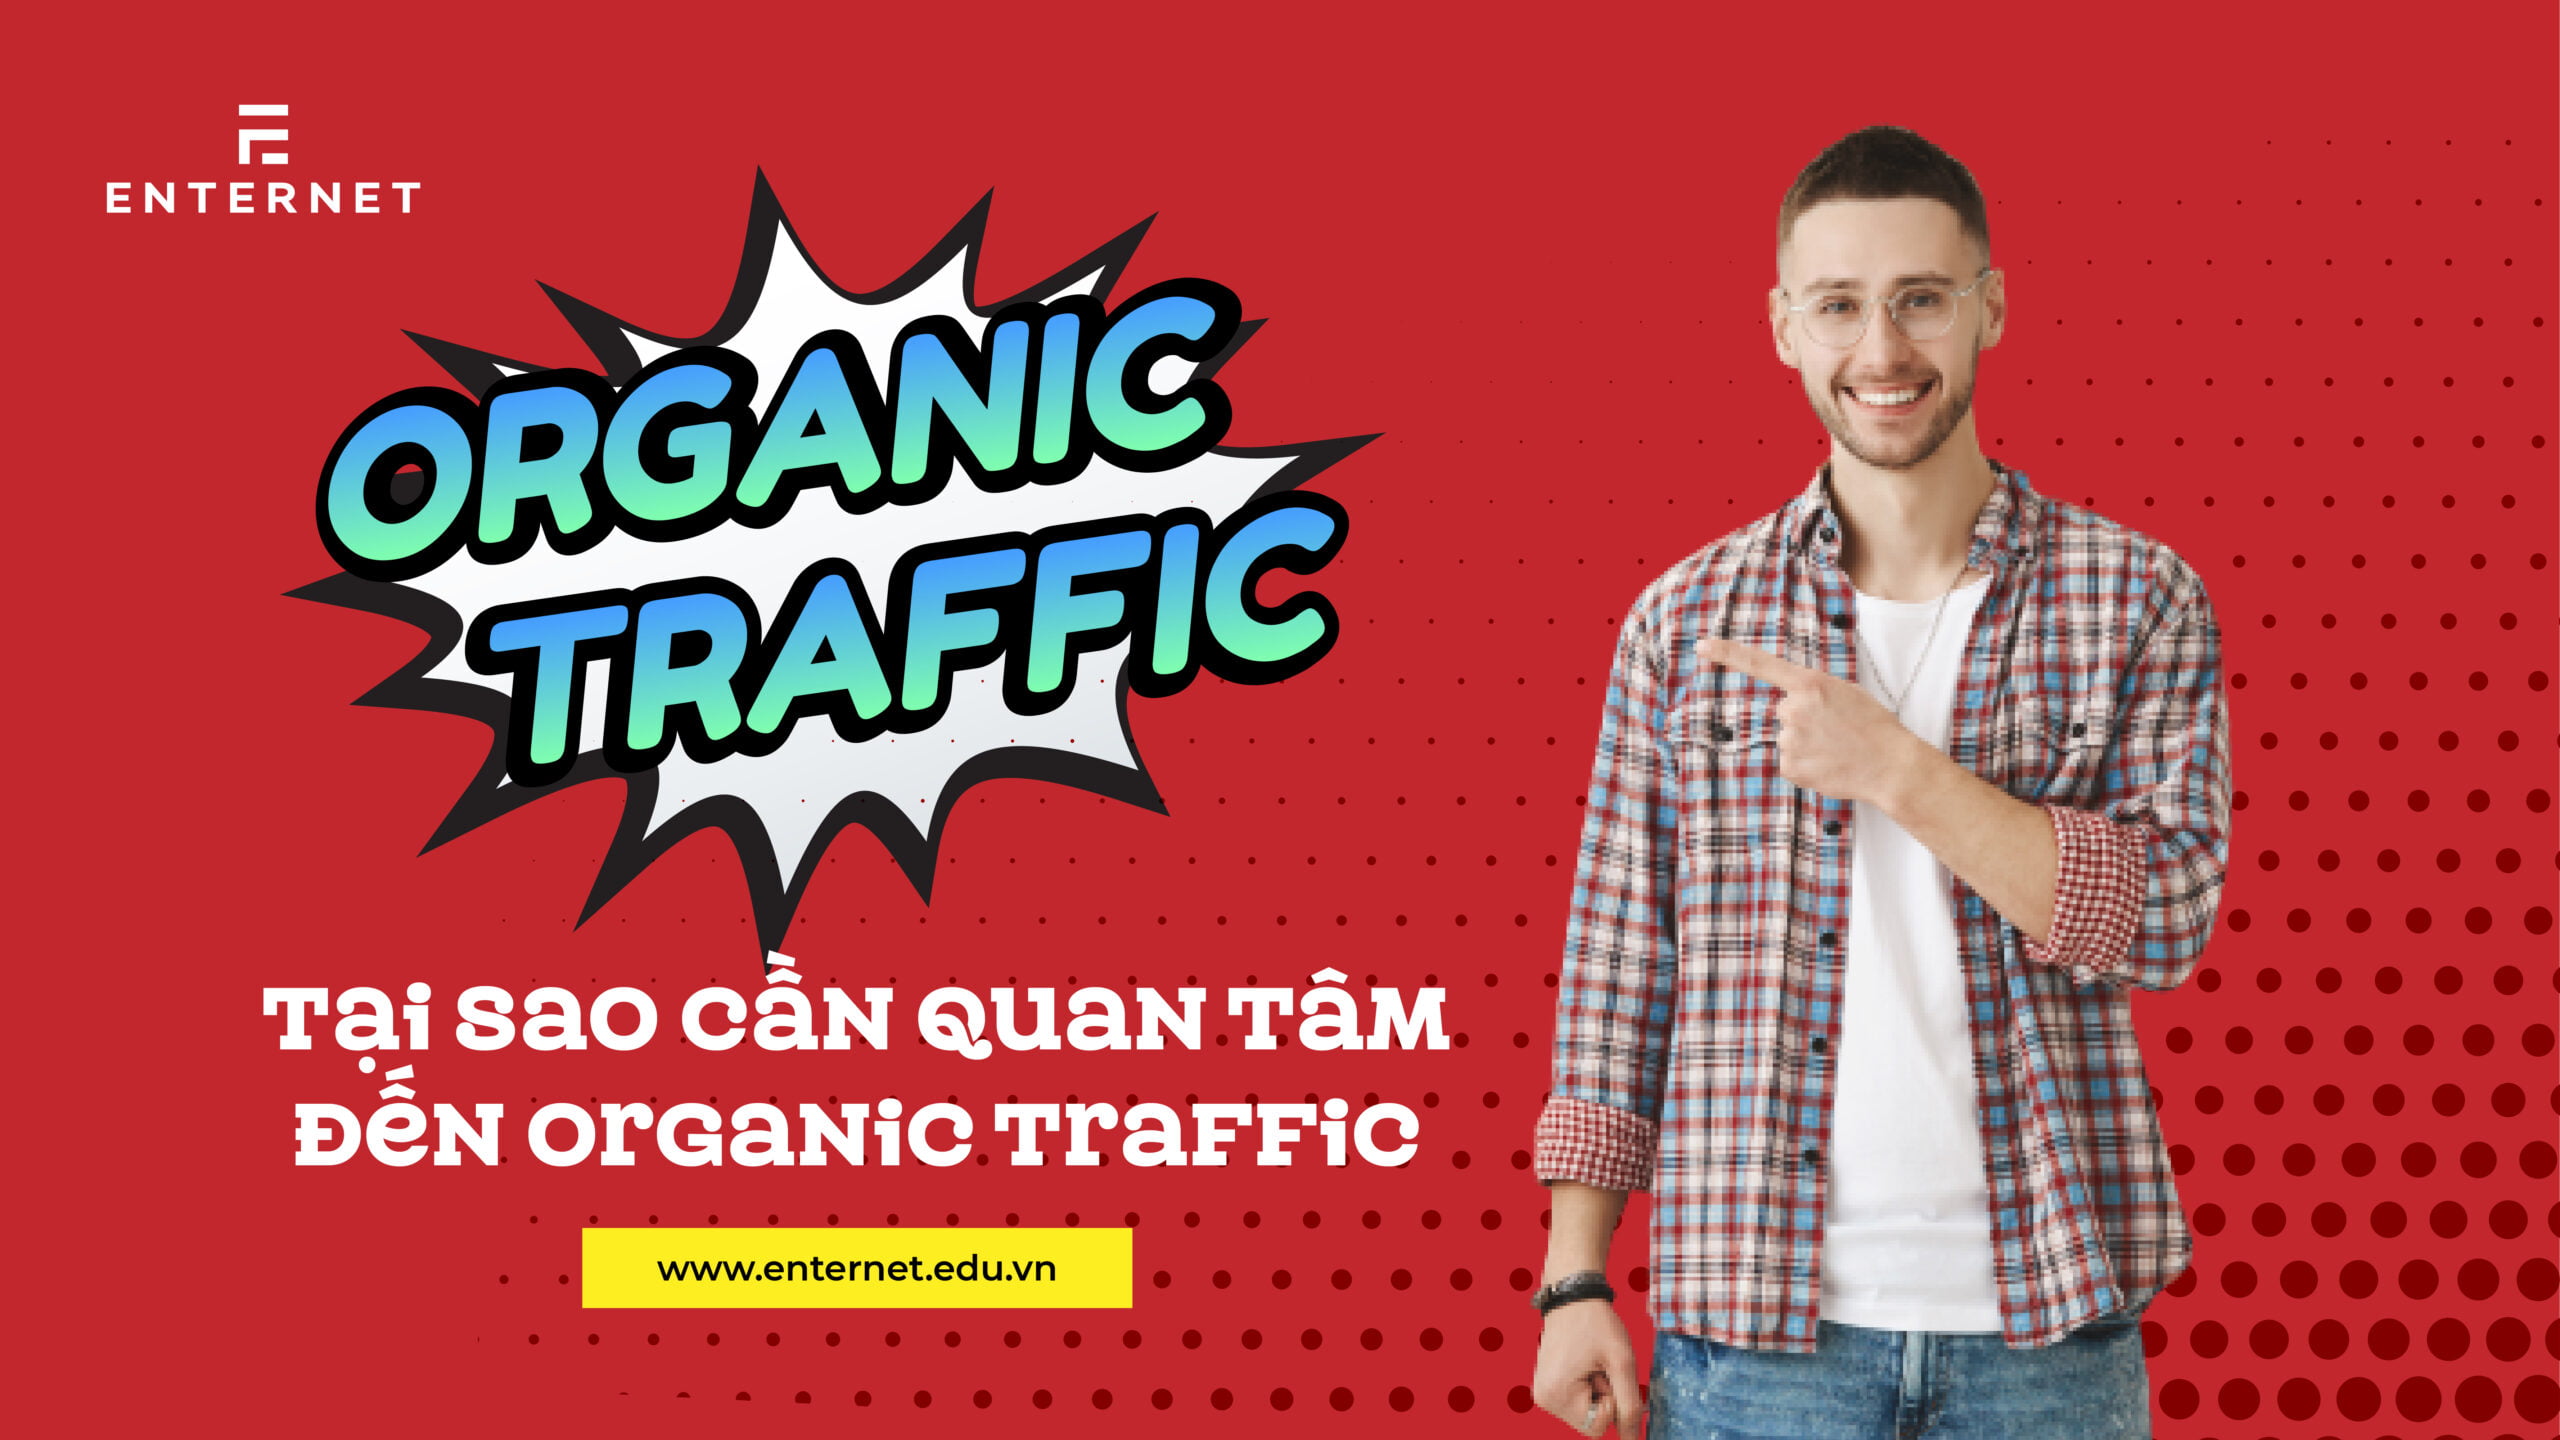 Organic Traffic là gì? Tại sao cần quan tâm đến organic traffic?